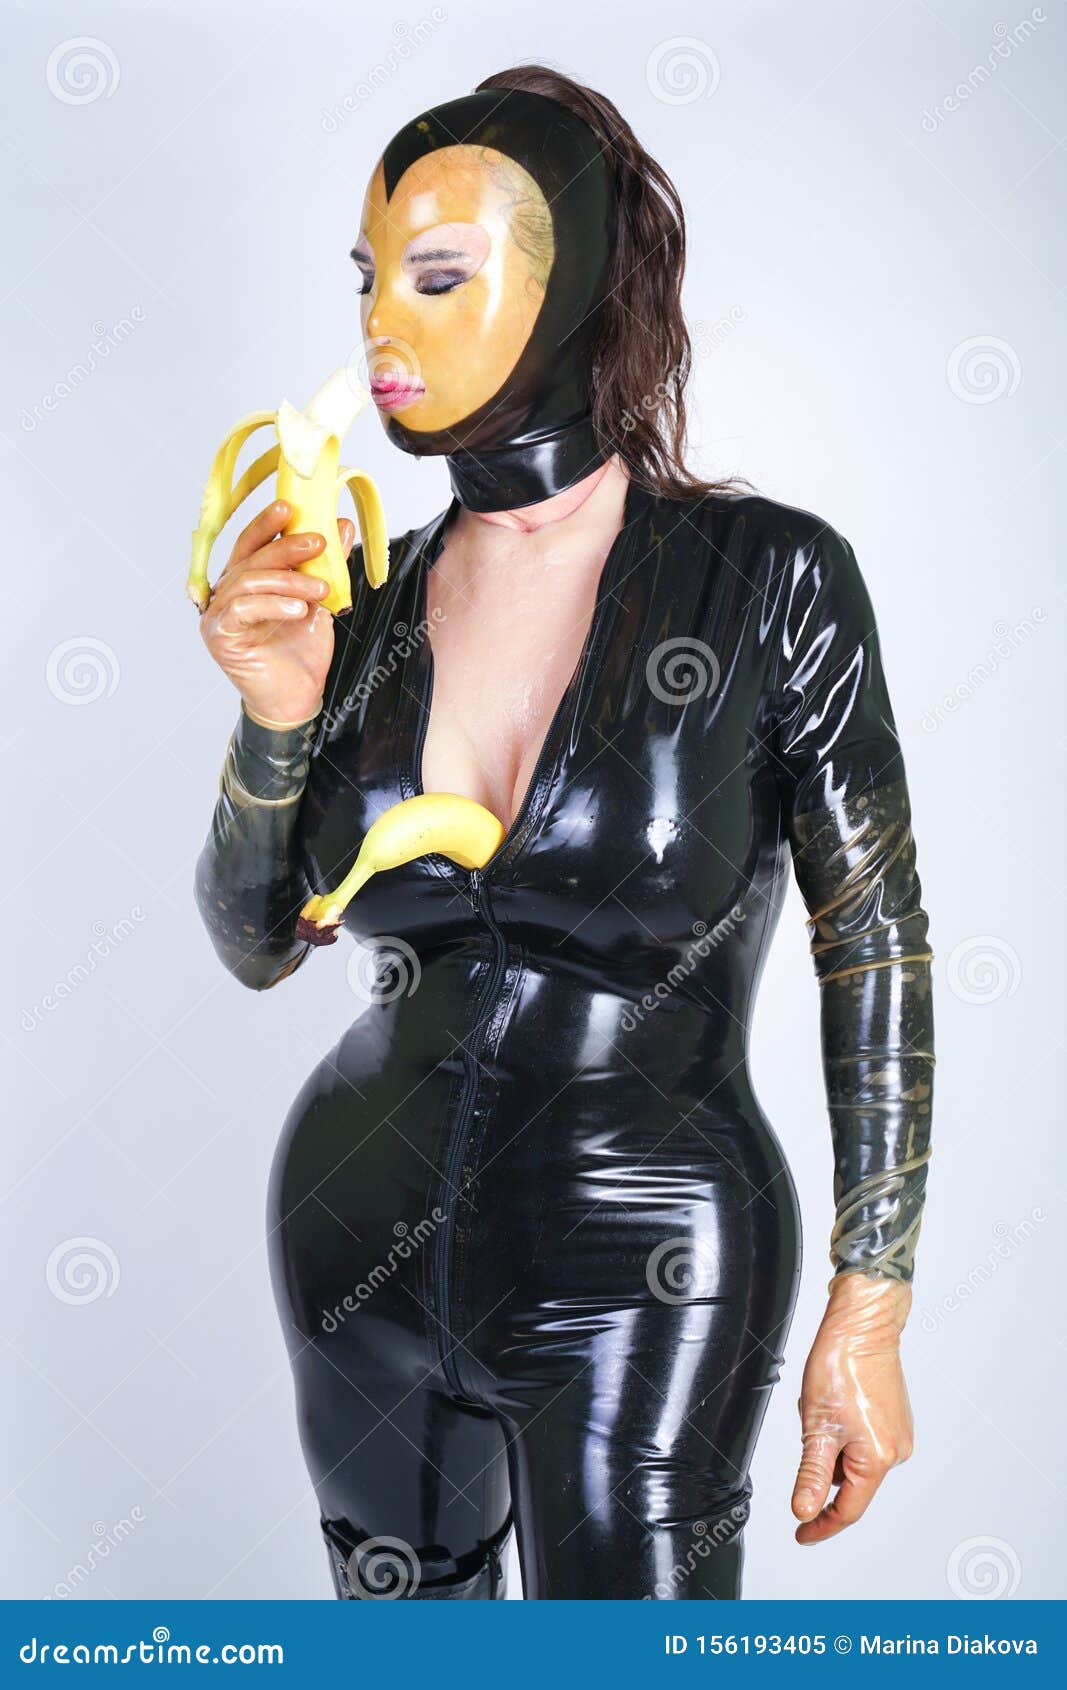 Latex Fetish Plus Size Person with Banana on White Isolated Studio  Background Stock Image - Image of mask, black: 156193405